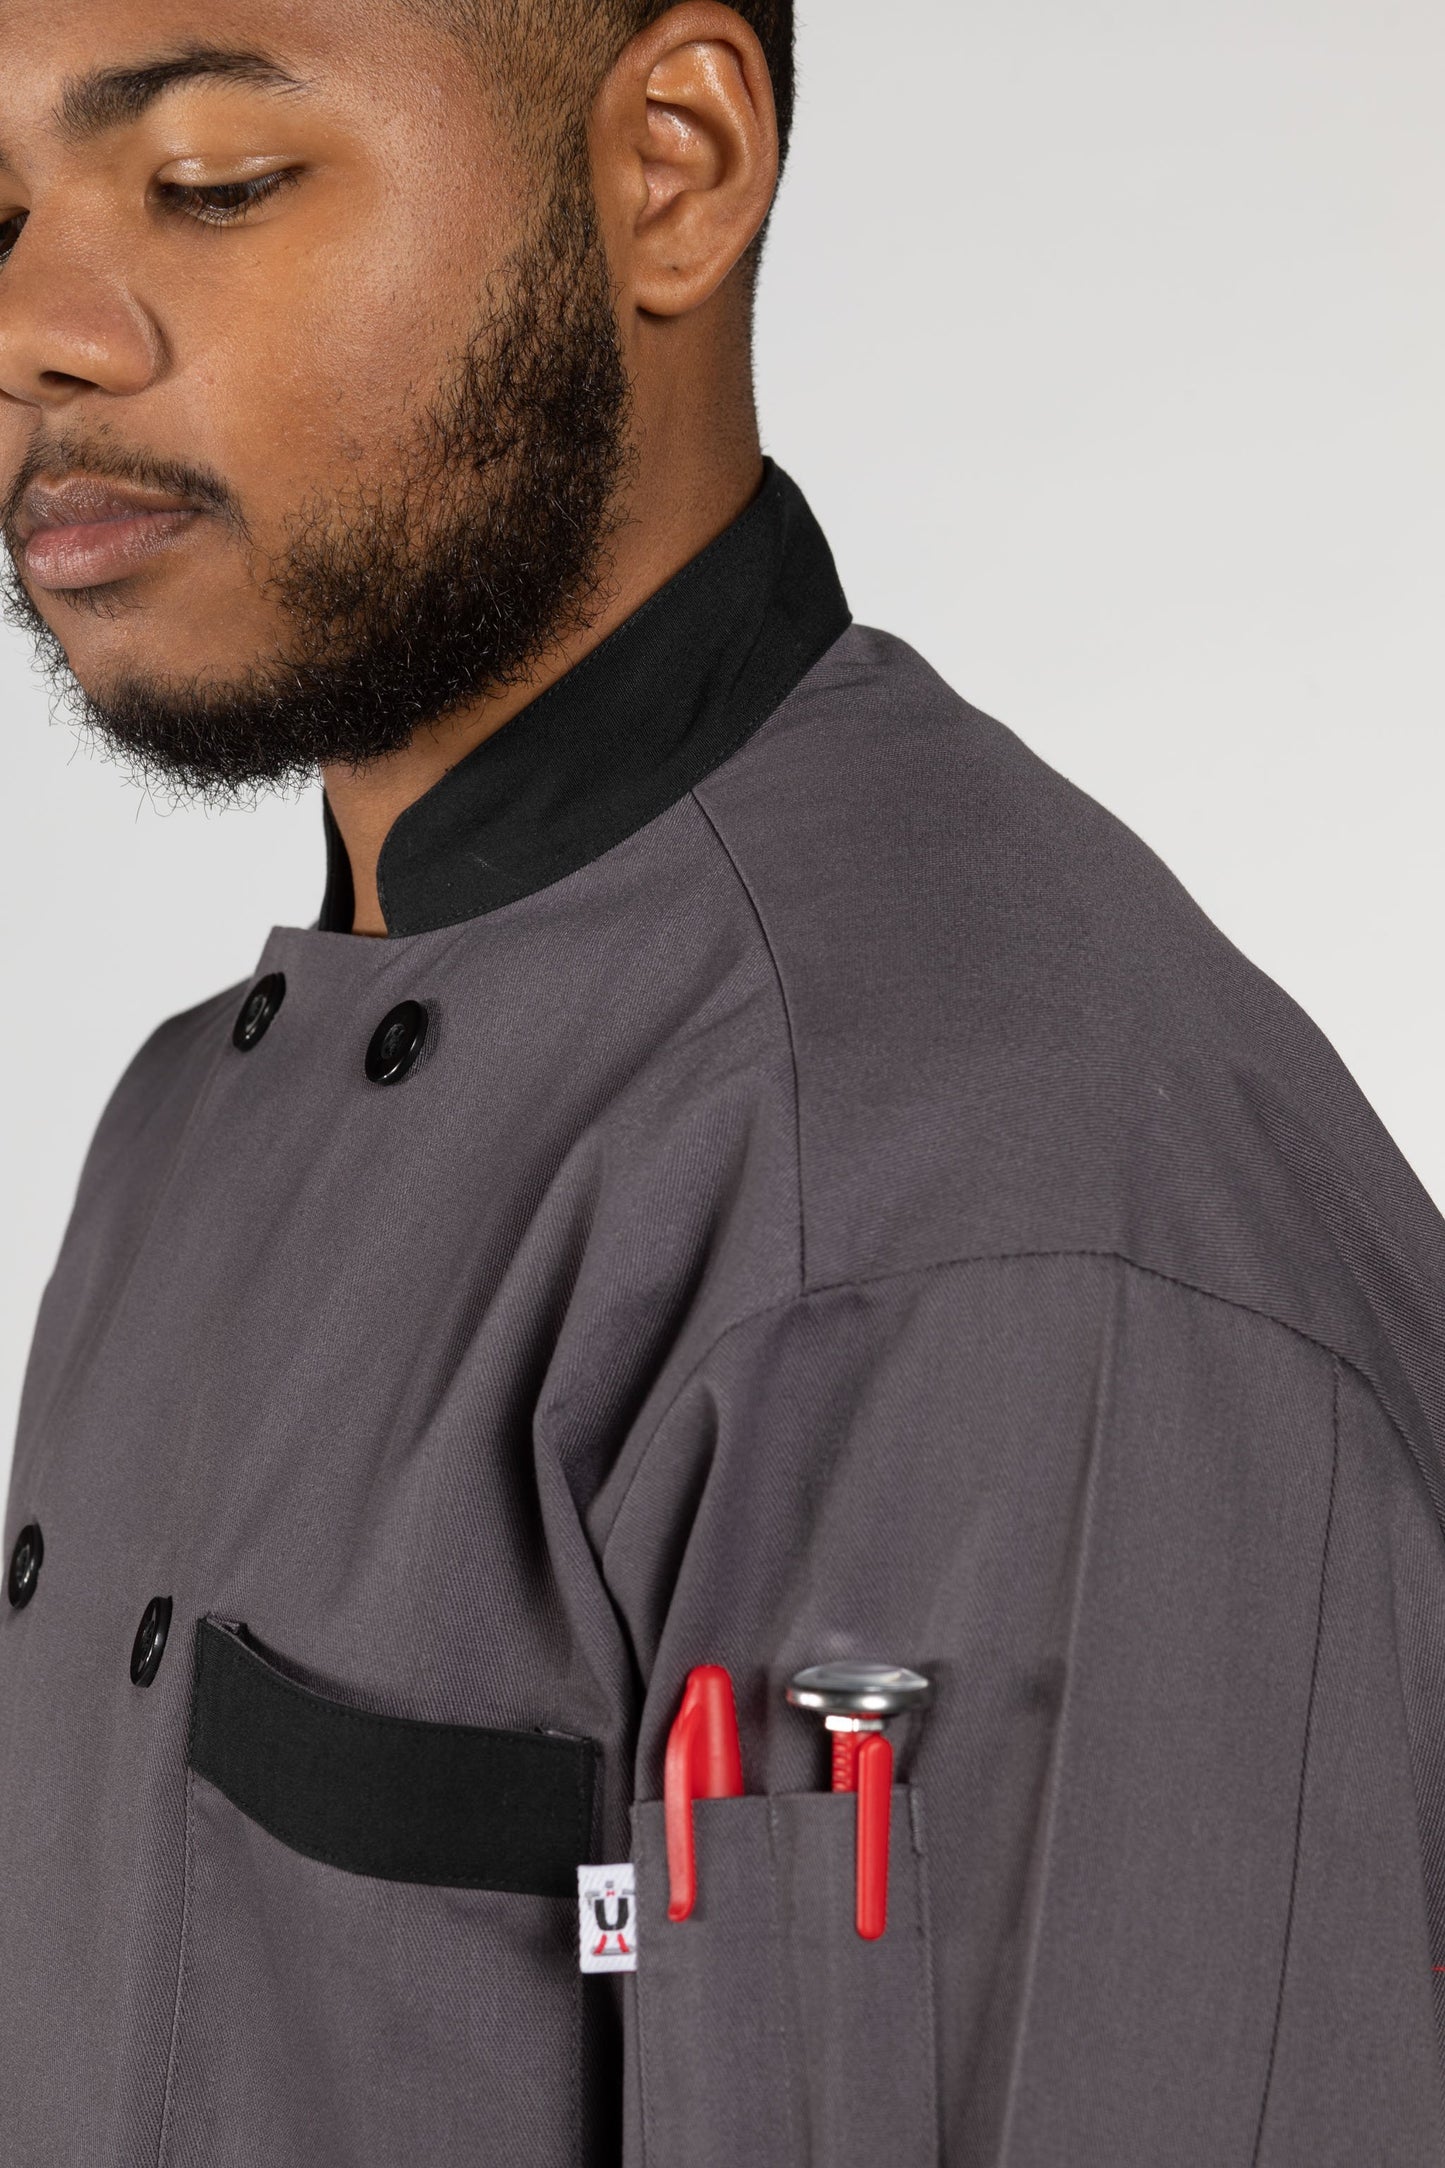 Newport Chef Coat #0404